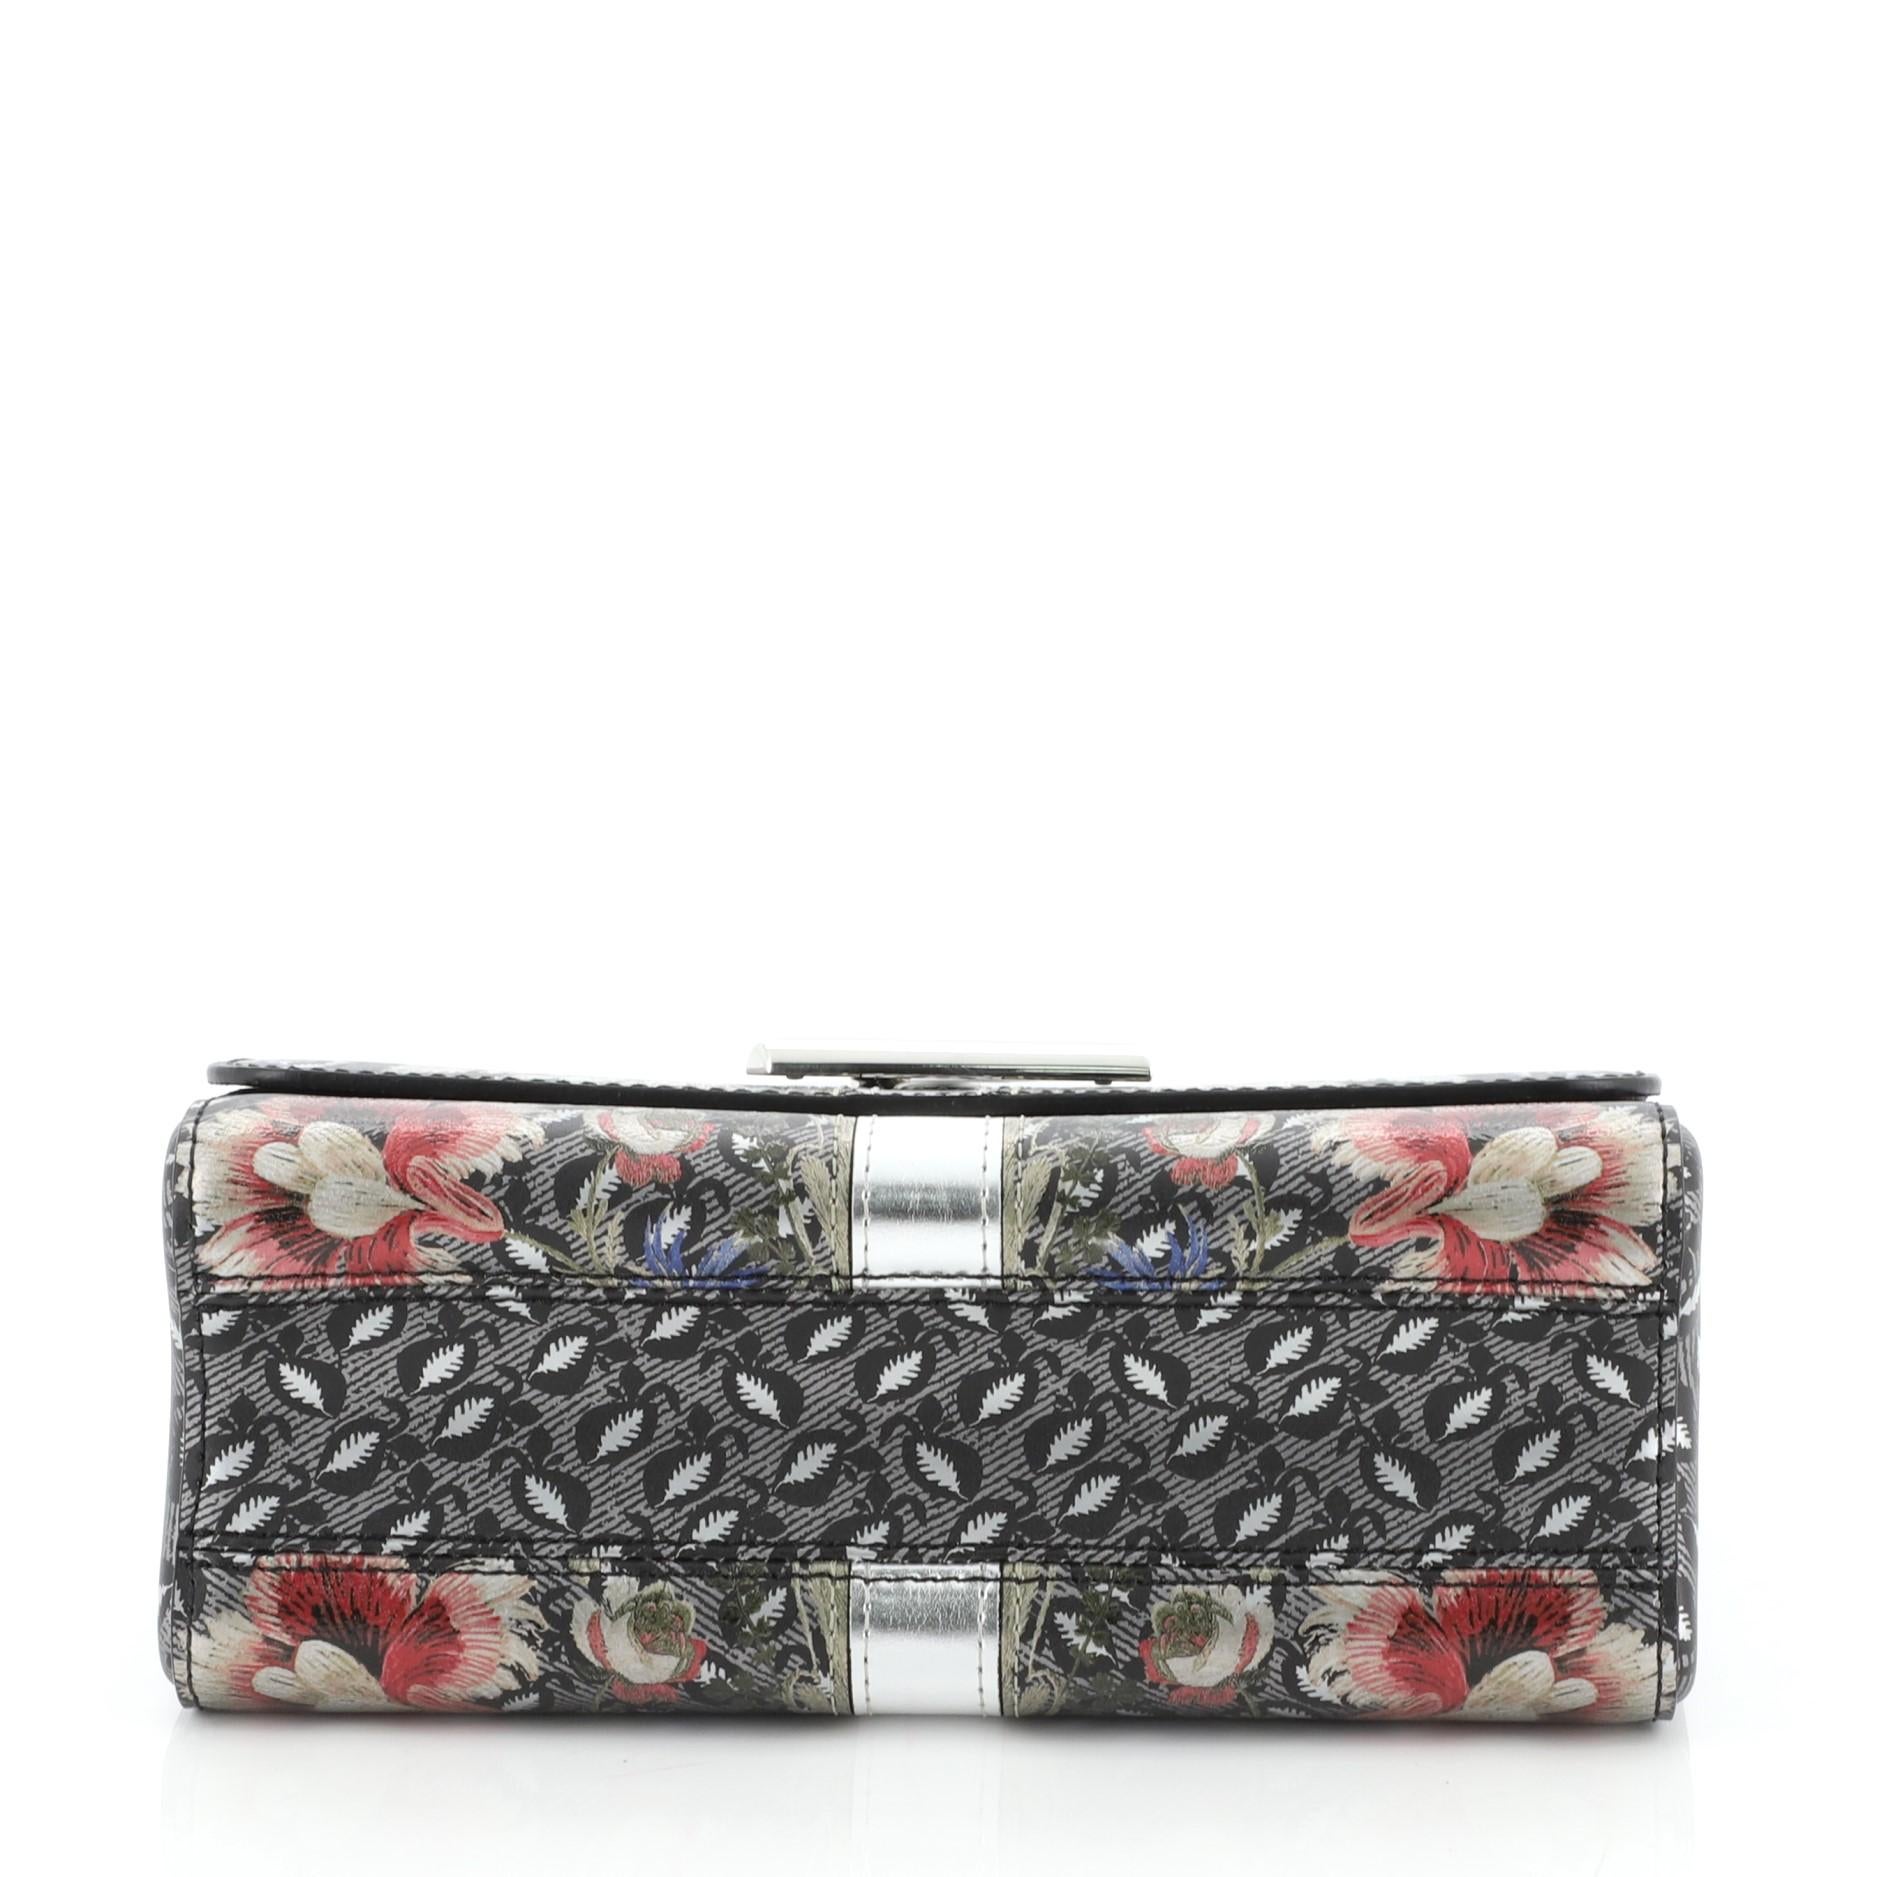 Women's Louis Vuitton Twist Handbag Limited Edition Floral Print Epi Leather MM